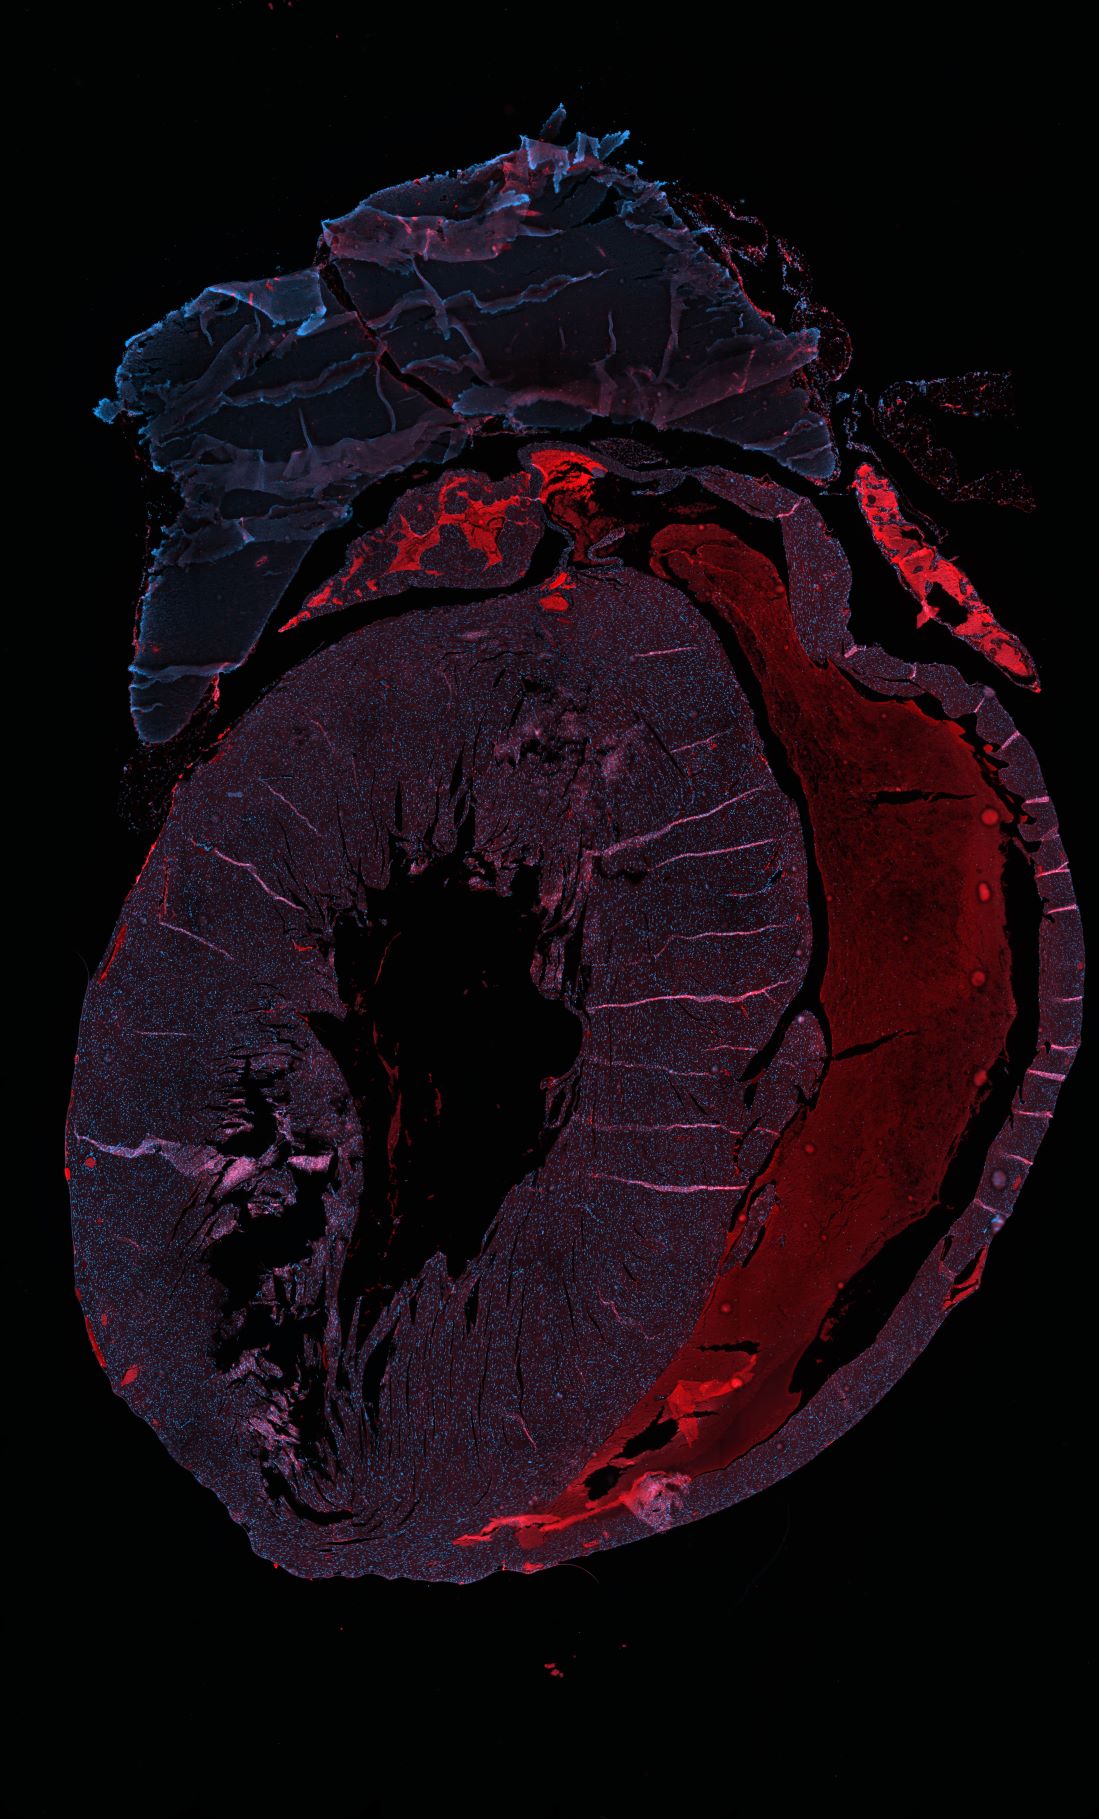 sezione di cuore con cellule marcate in fluorescenza-ft credits @CEINGE -immagine soggetta a copyright